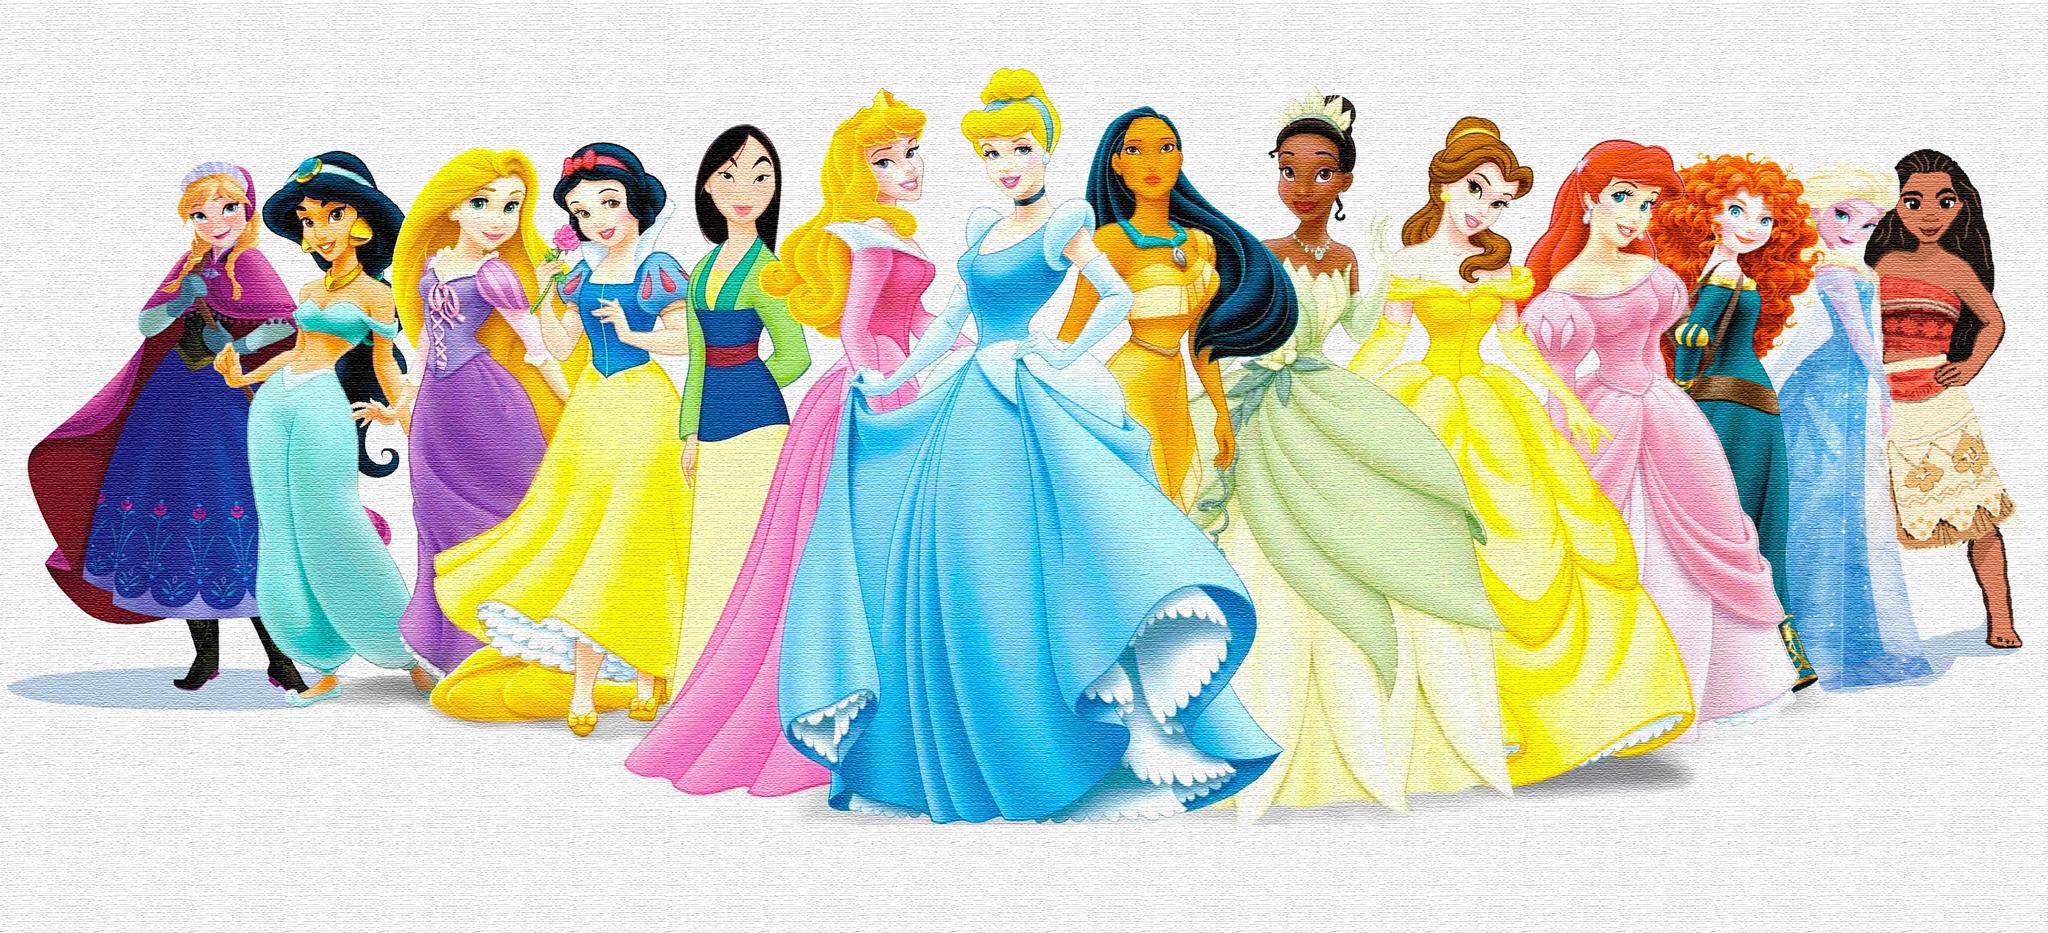 14位美丽的迪士尼公主,正式加冕的只有11位